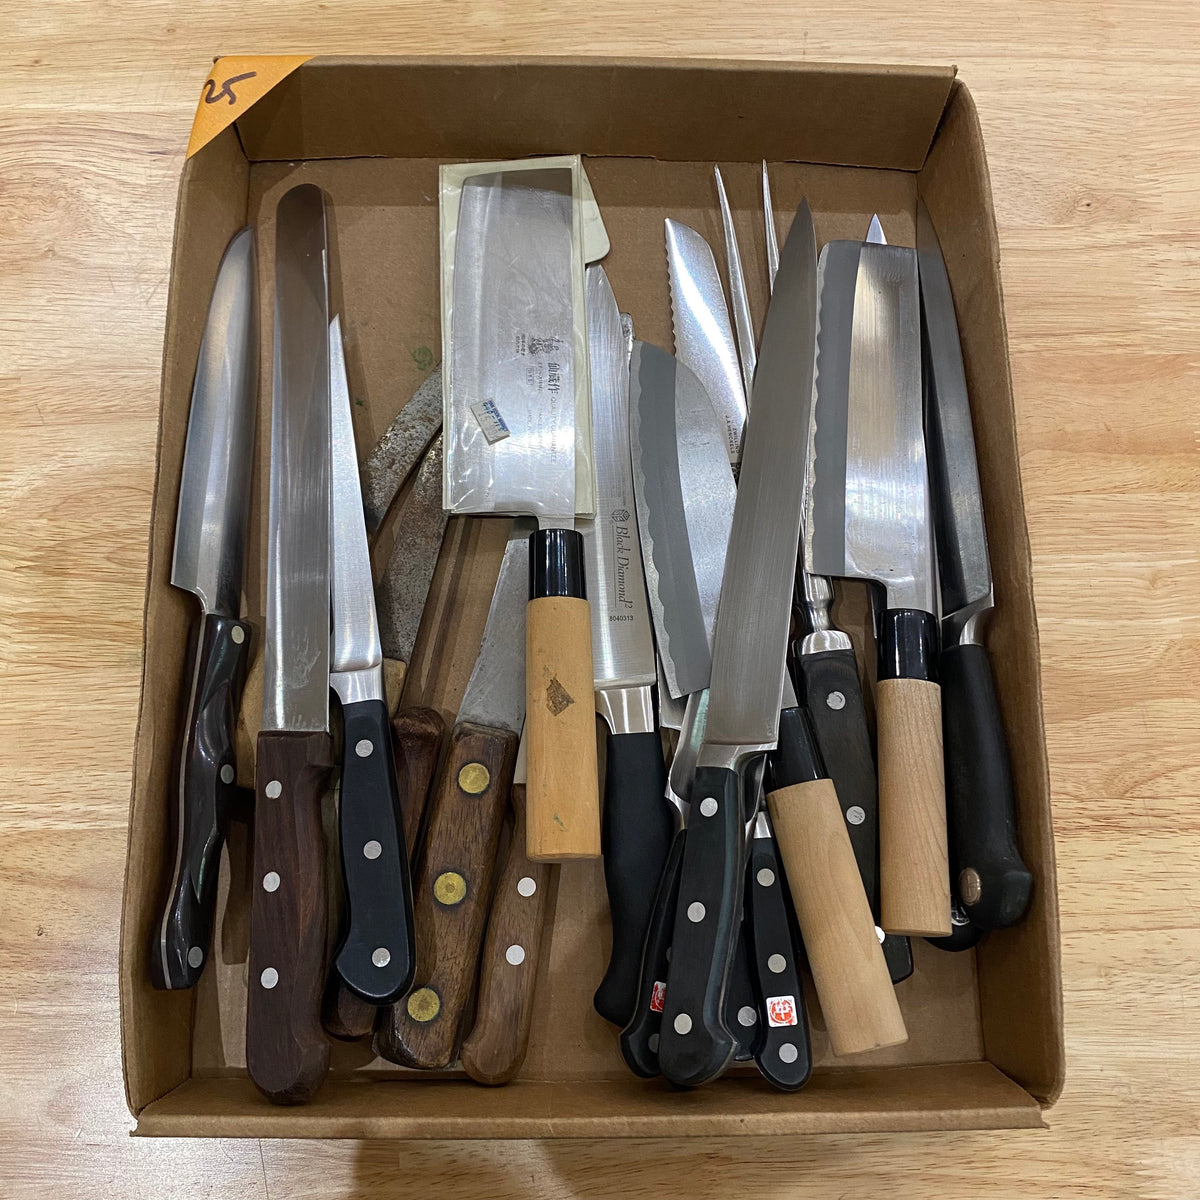 Bargain Bin Knife - $25 each